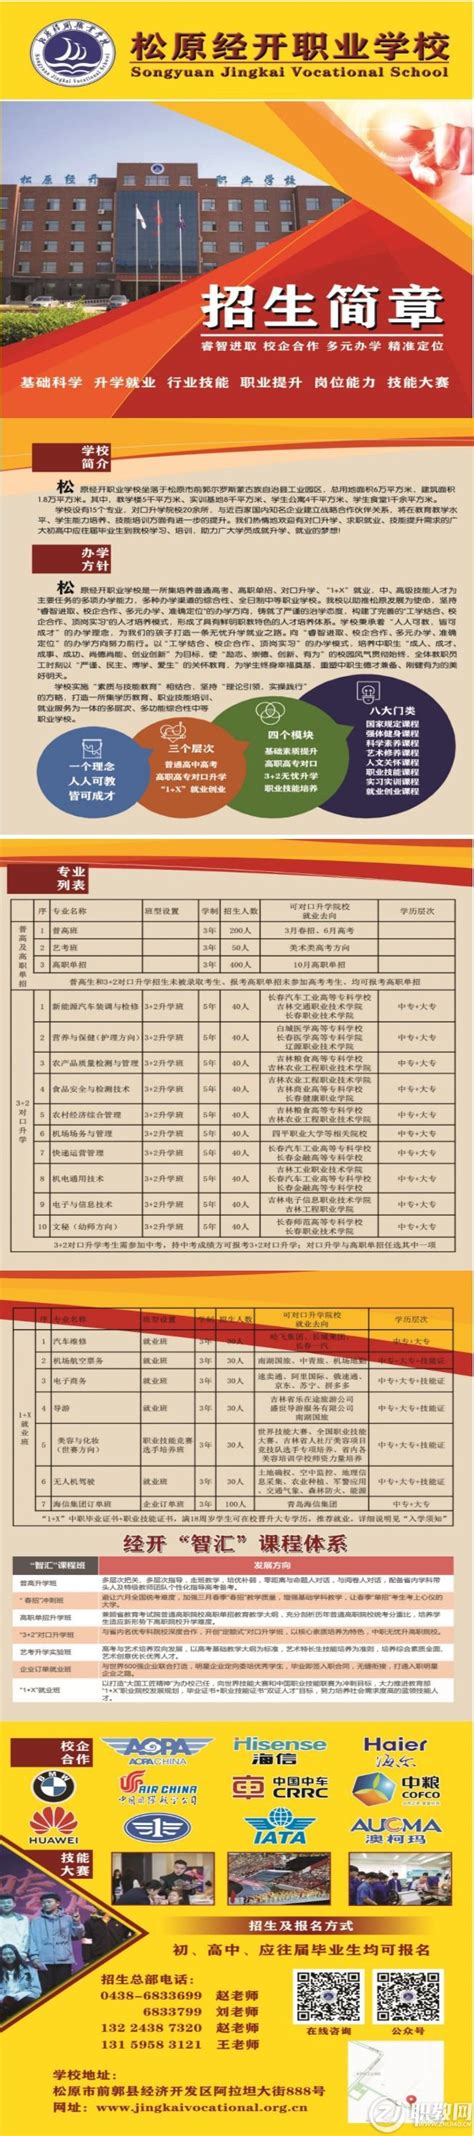 2022松原市前郭县事业单位报名入口官网 - 公务员考试网